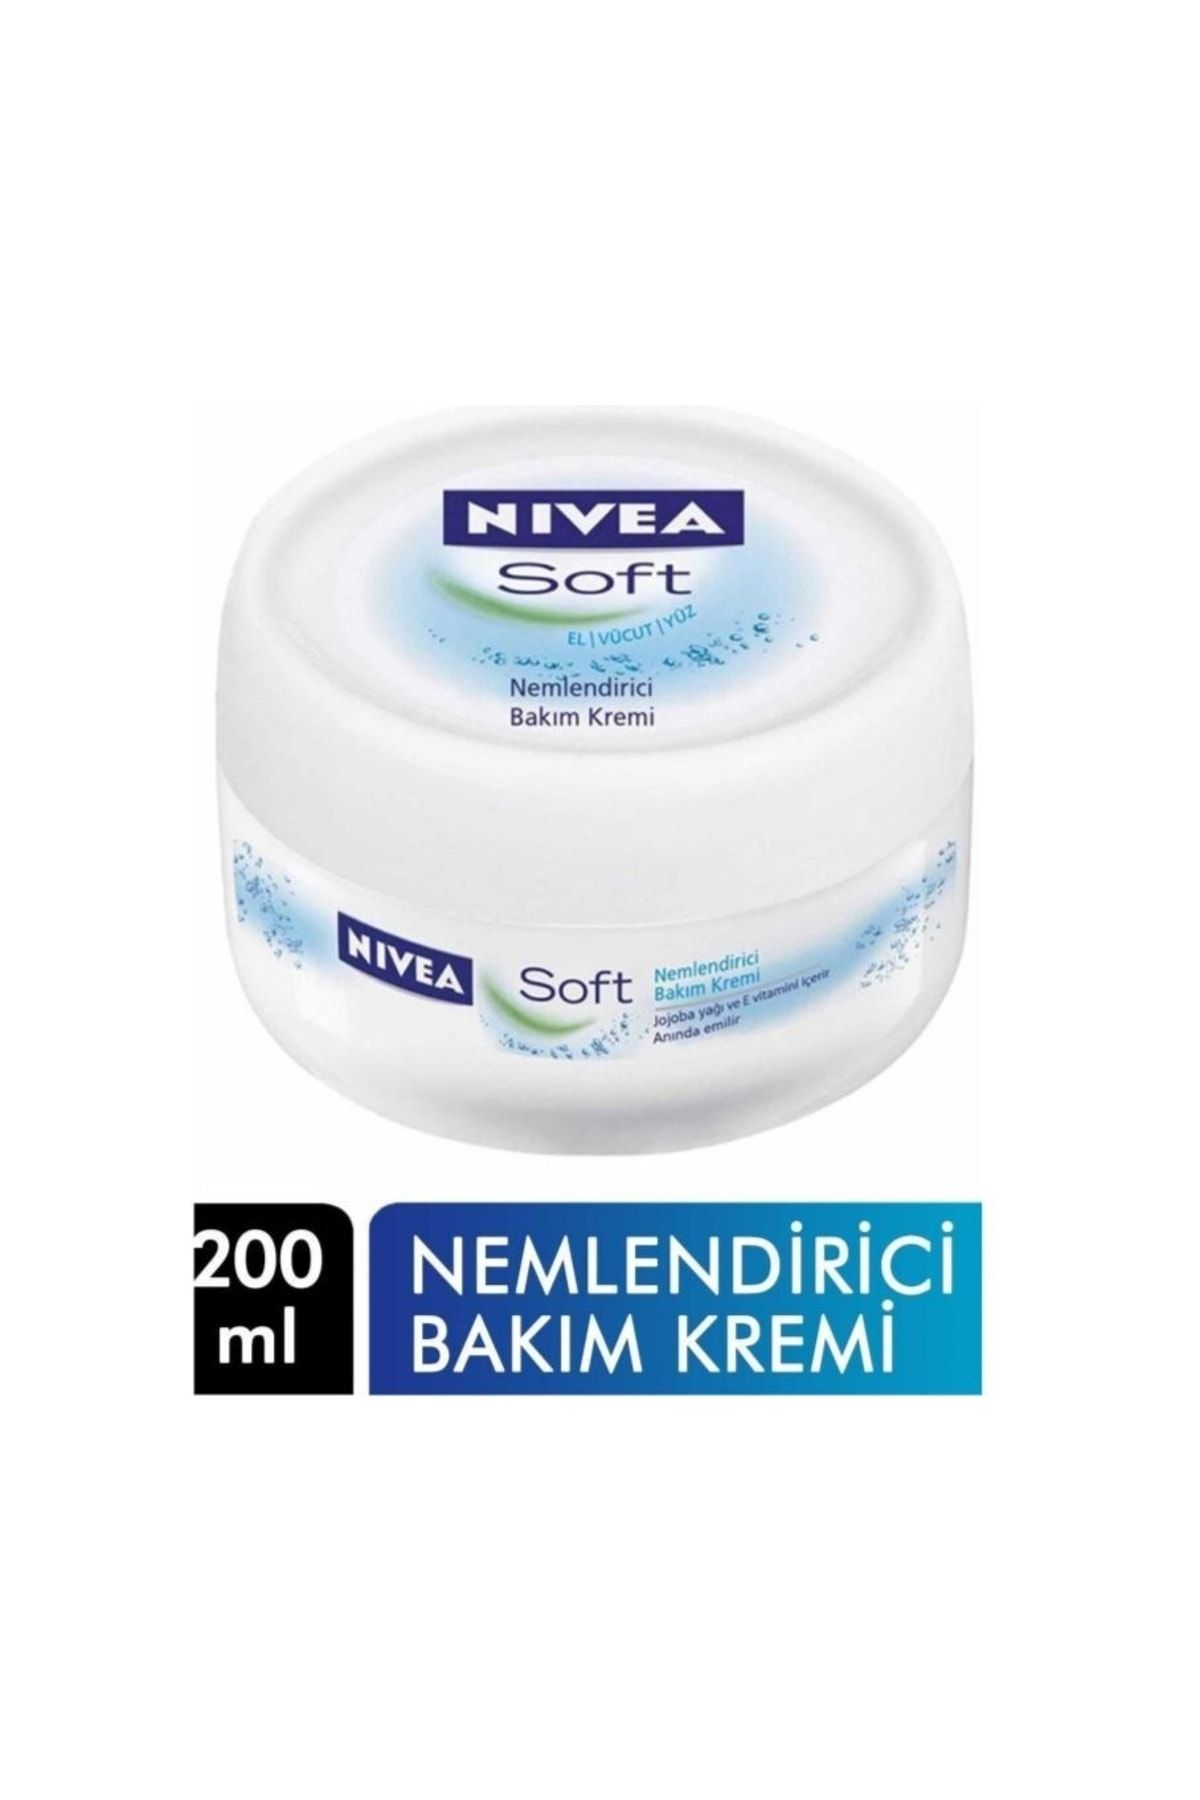 NIVEA Soft Krem 200 Ml Nemlendirici Bakım Yüz Kremi 4005808890507